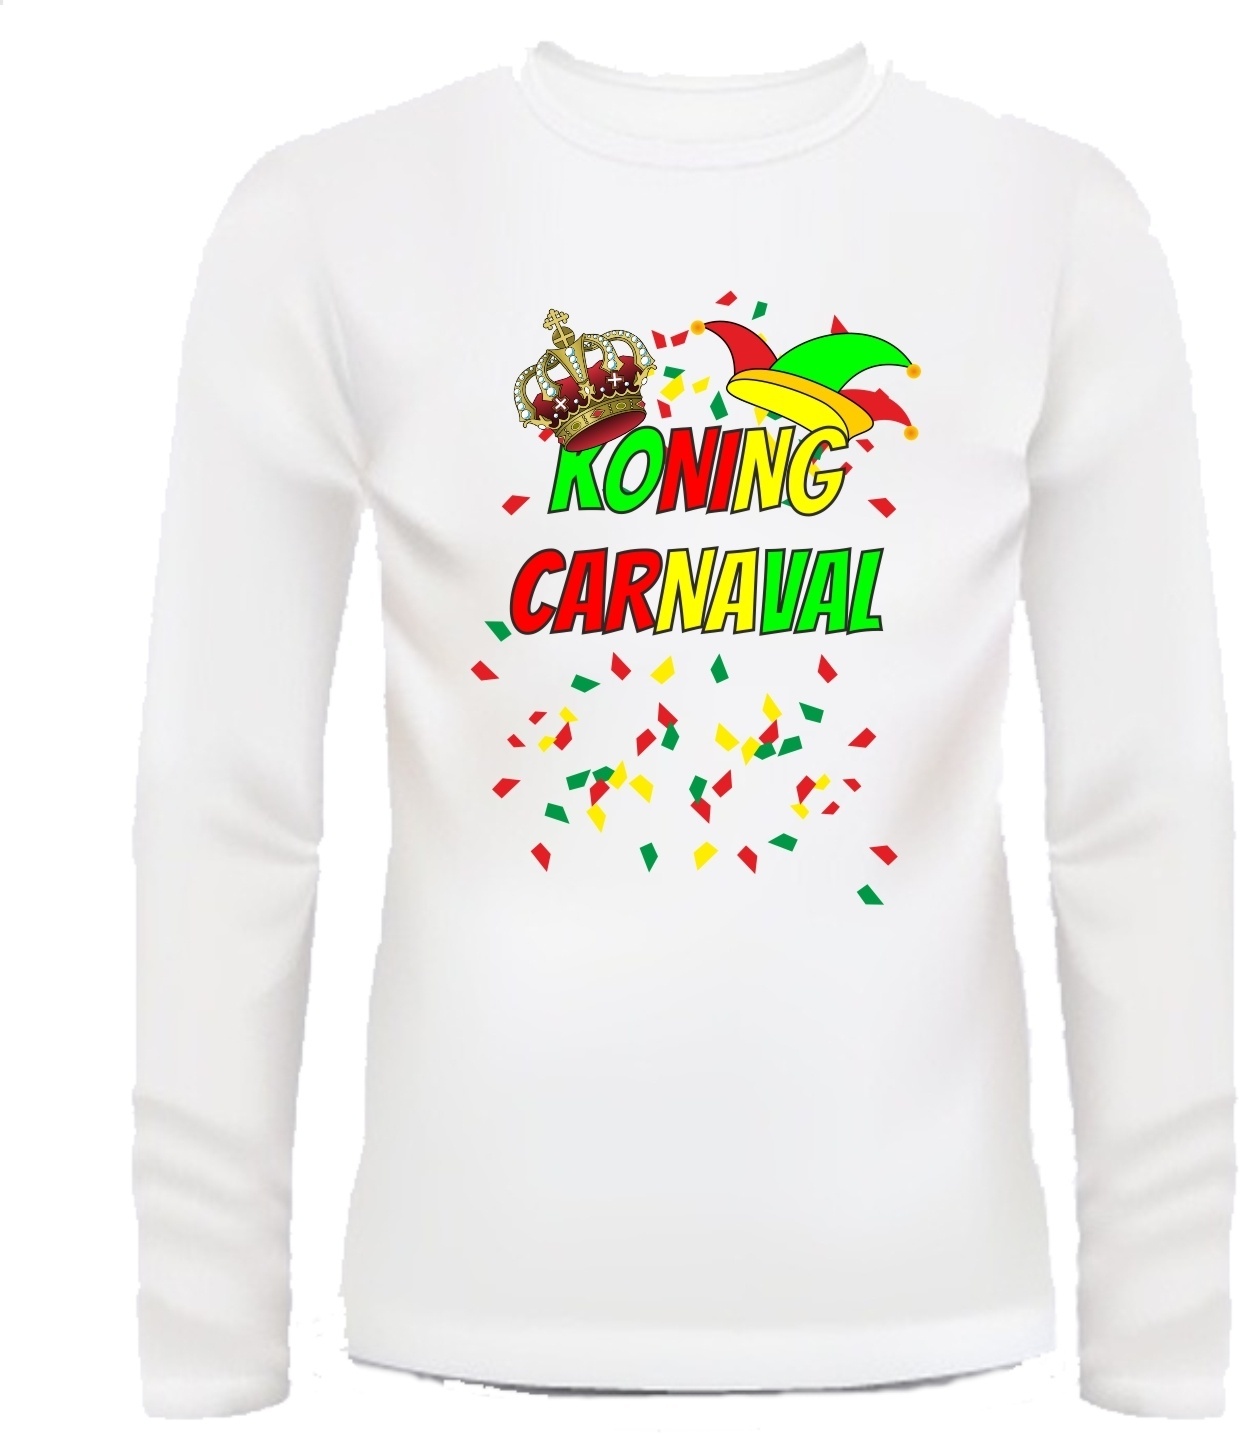 Koning carnaval T-shirt Alaaf feest gezellig